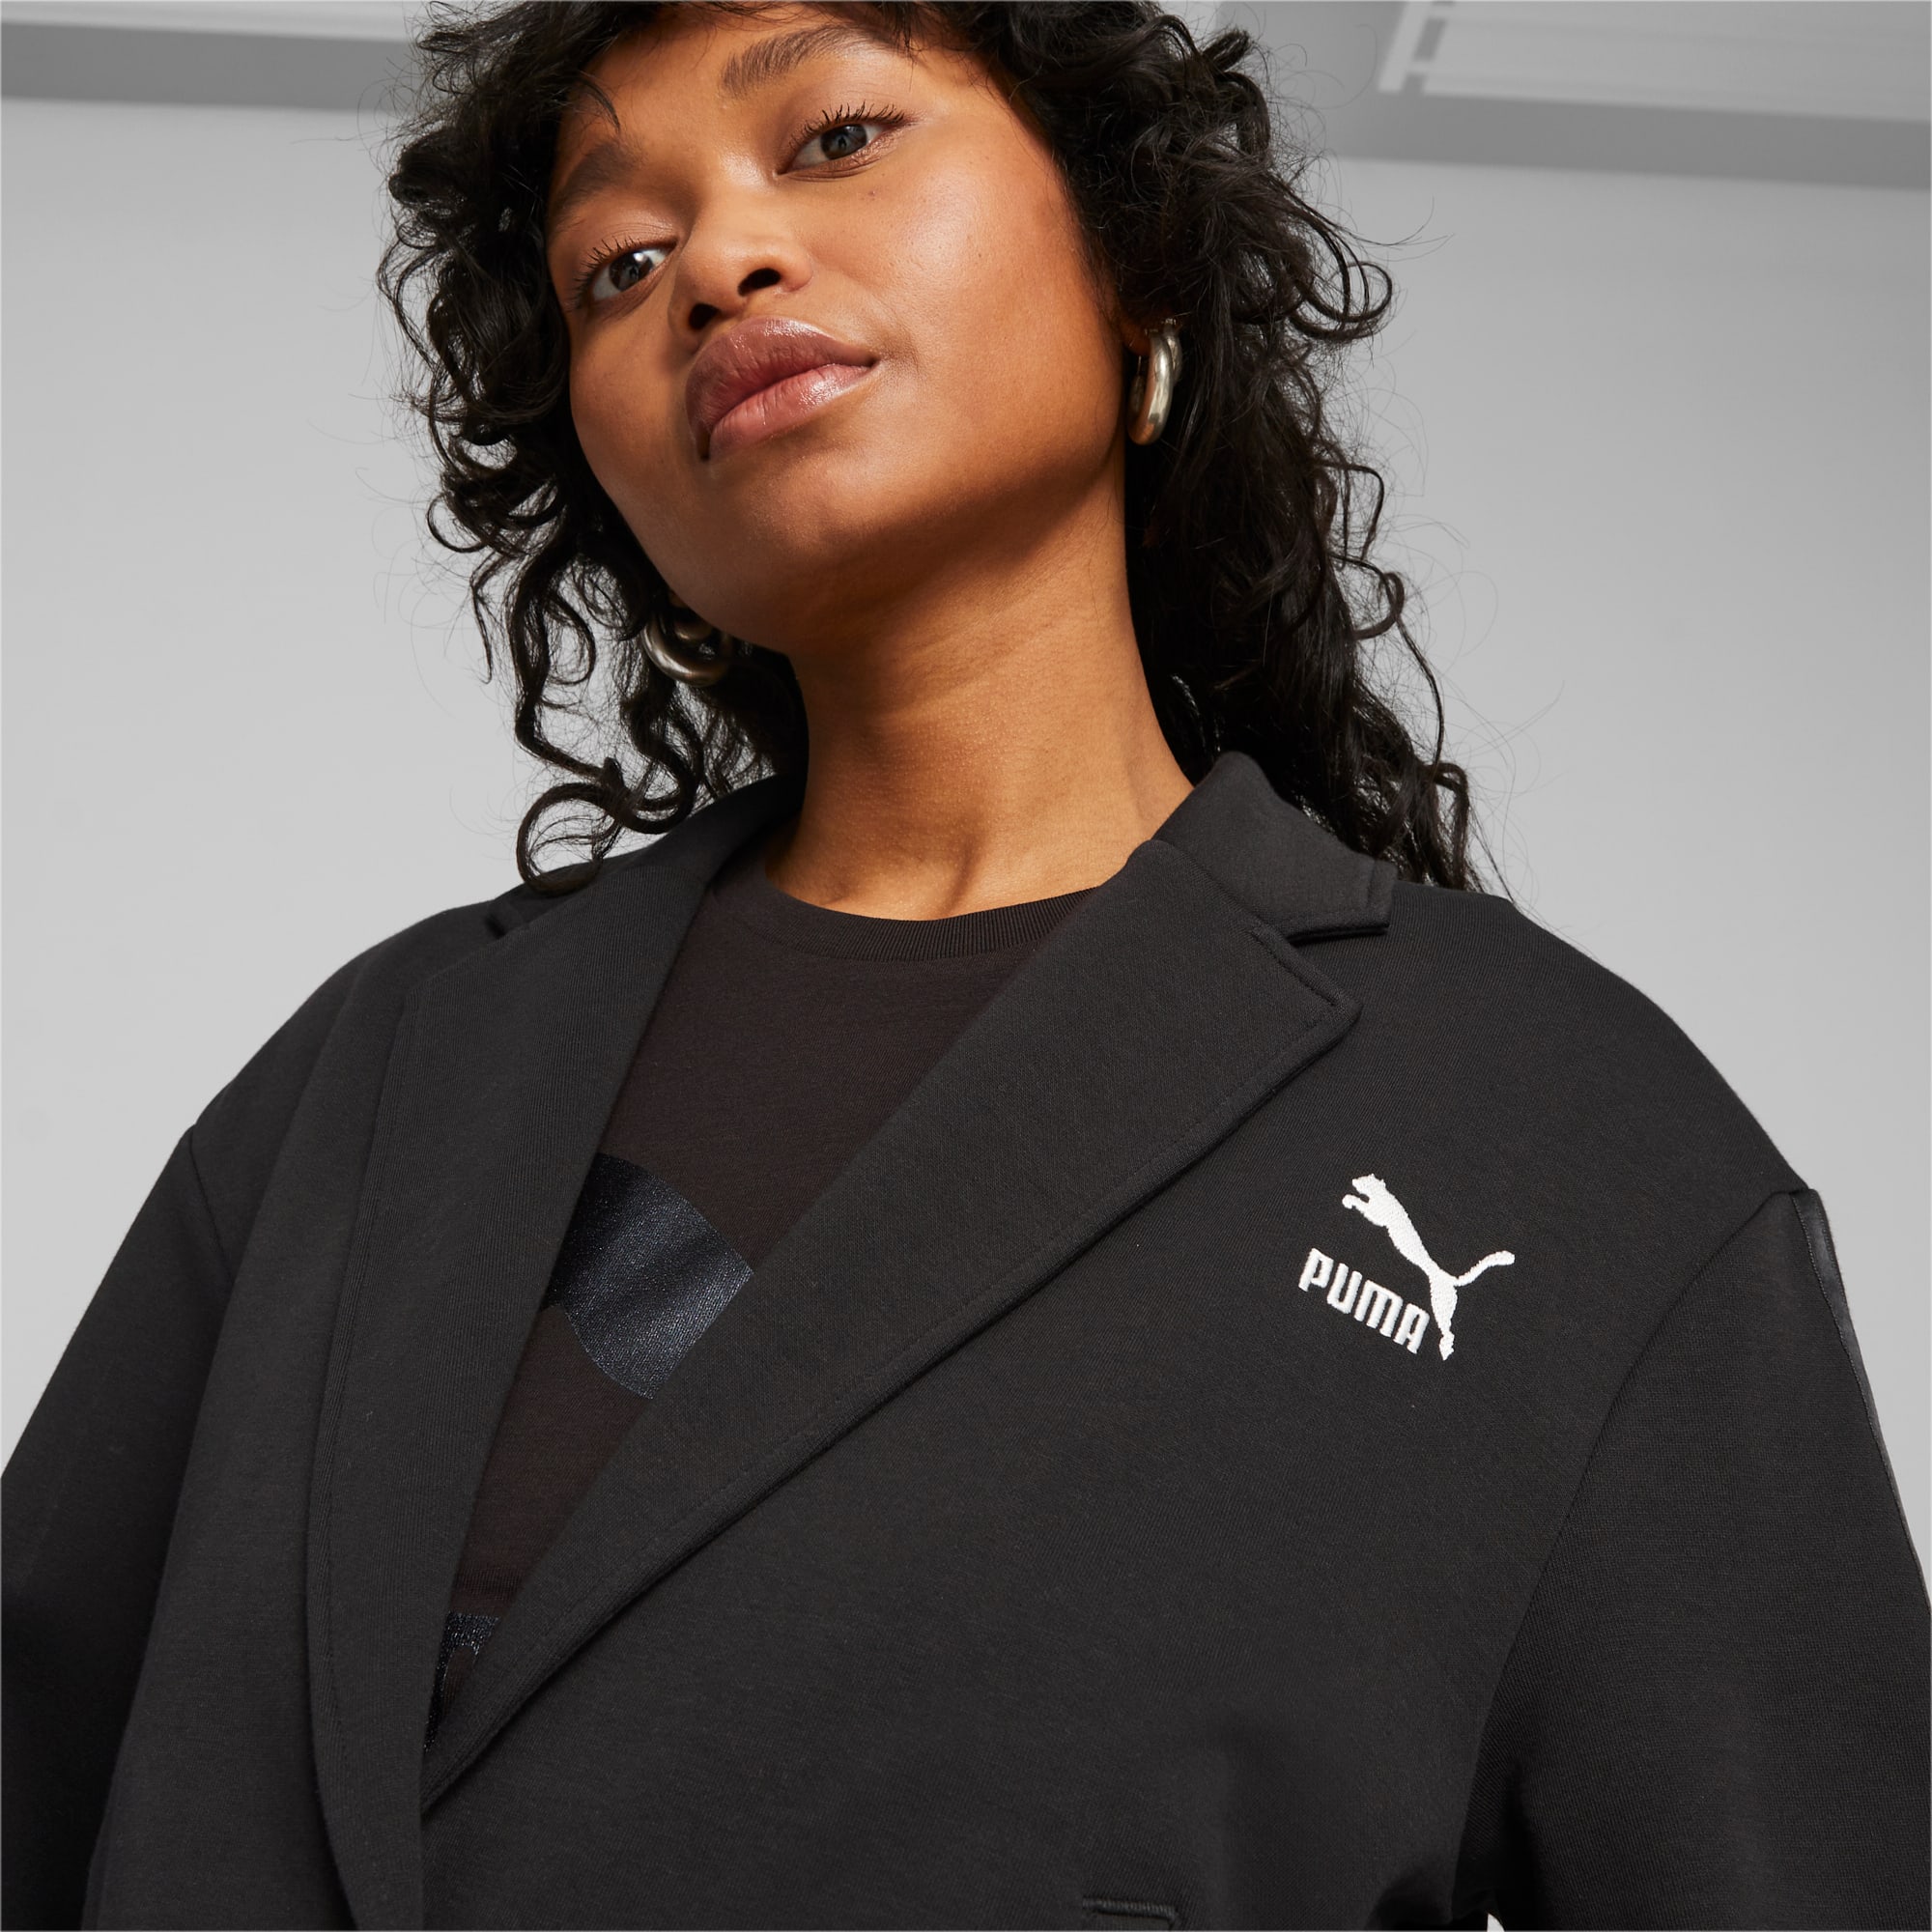 District Concept Store - PUMA Iconic T7 Crop Women Jacket - Black  (531623-01)